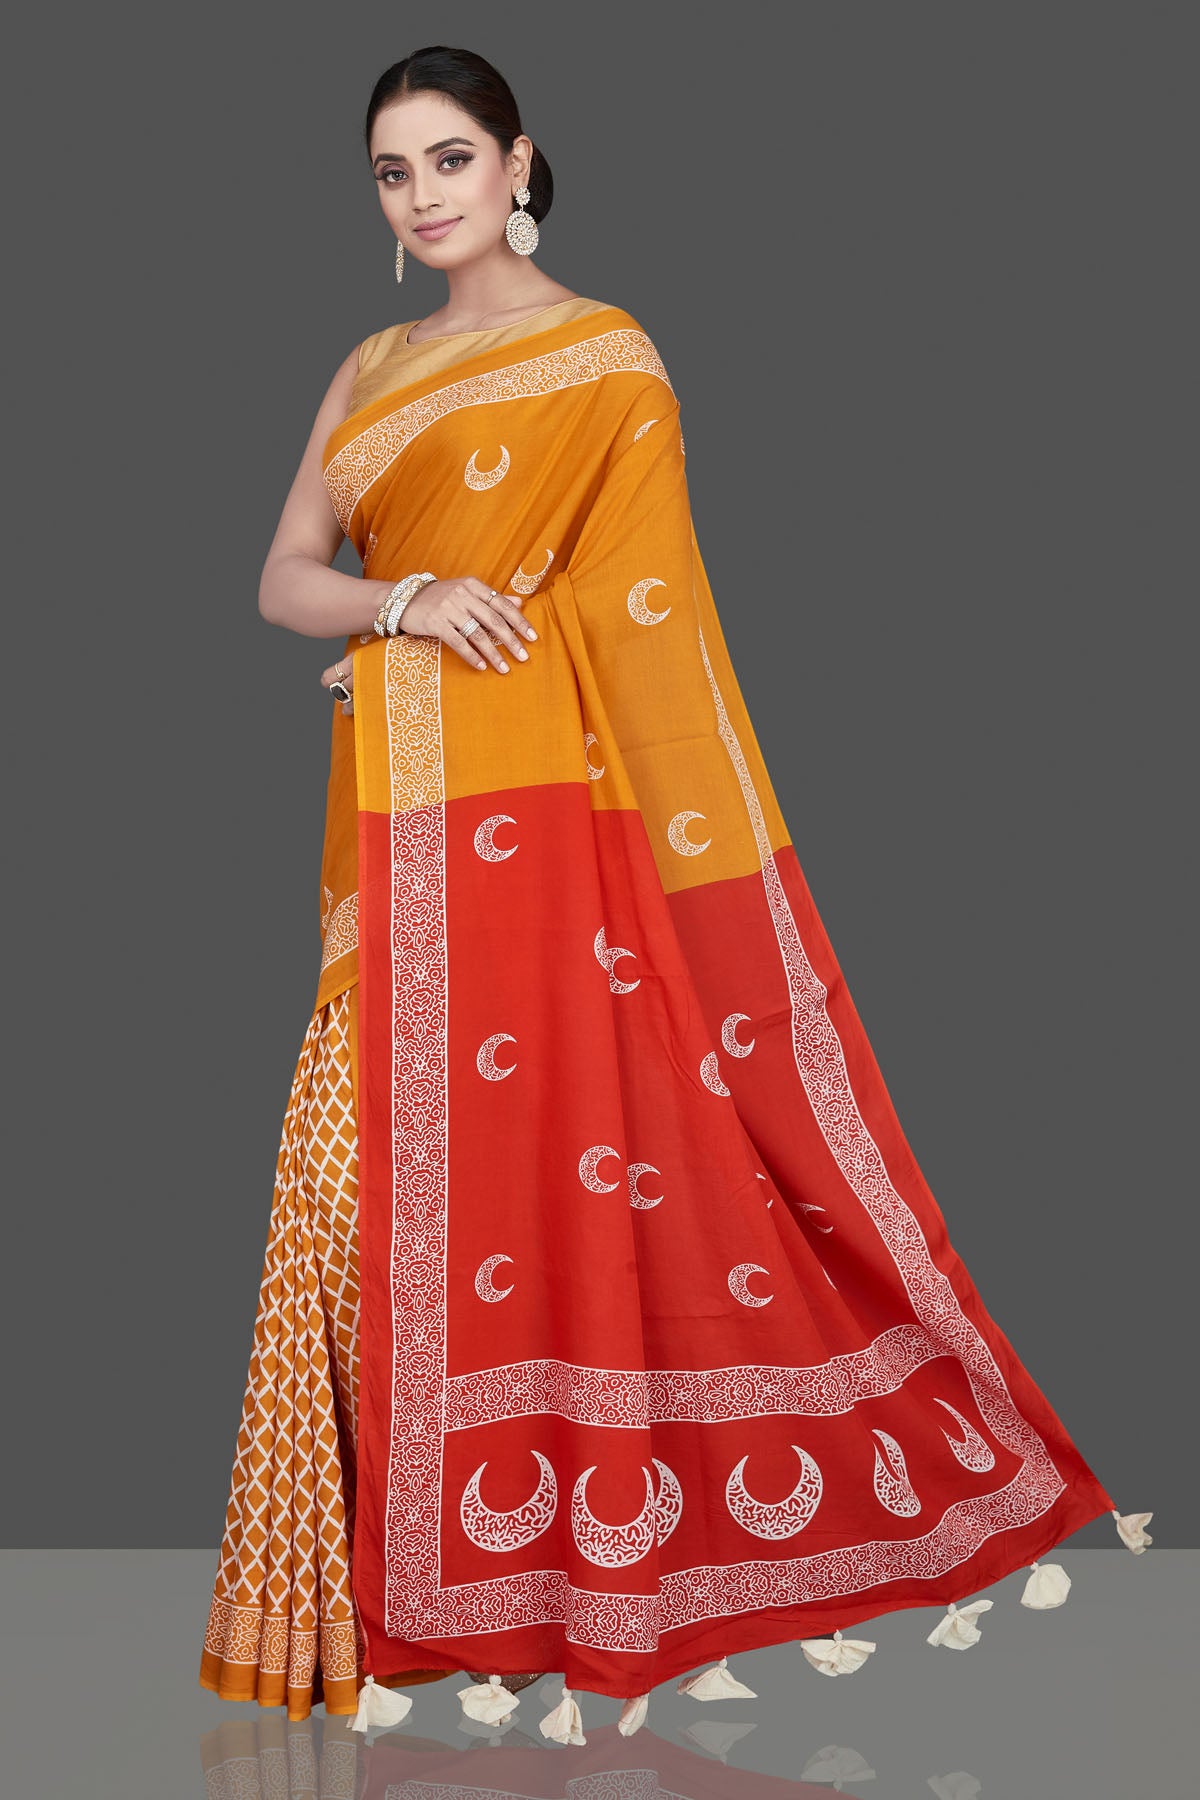 Buy beautiful yellow printed modal silk saree online in USA with red pallu. Be the highlight of the occasion in beautiful pure silk saree, designer saris, handloom sarees, embroidered sarees, Kanchipuram sarees, Banarasi saris from Pure Elegance Indian saree store in USA.-pallu